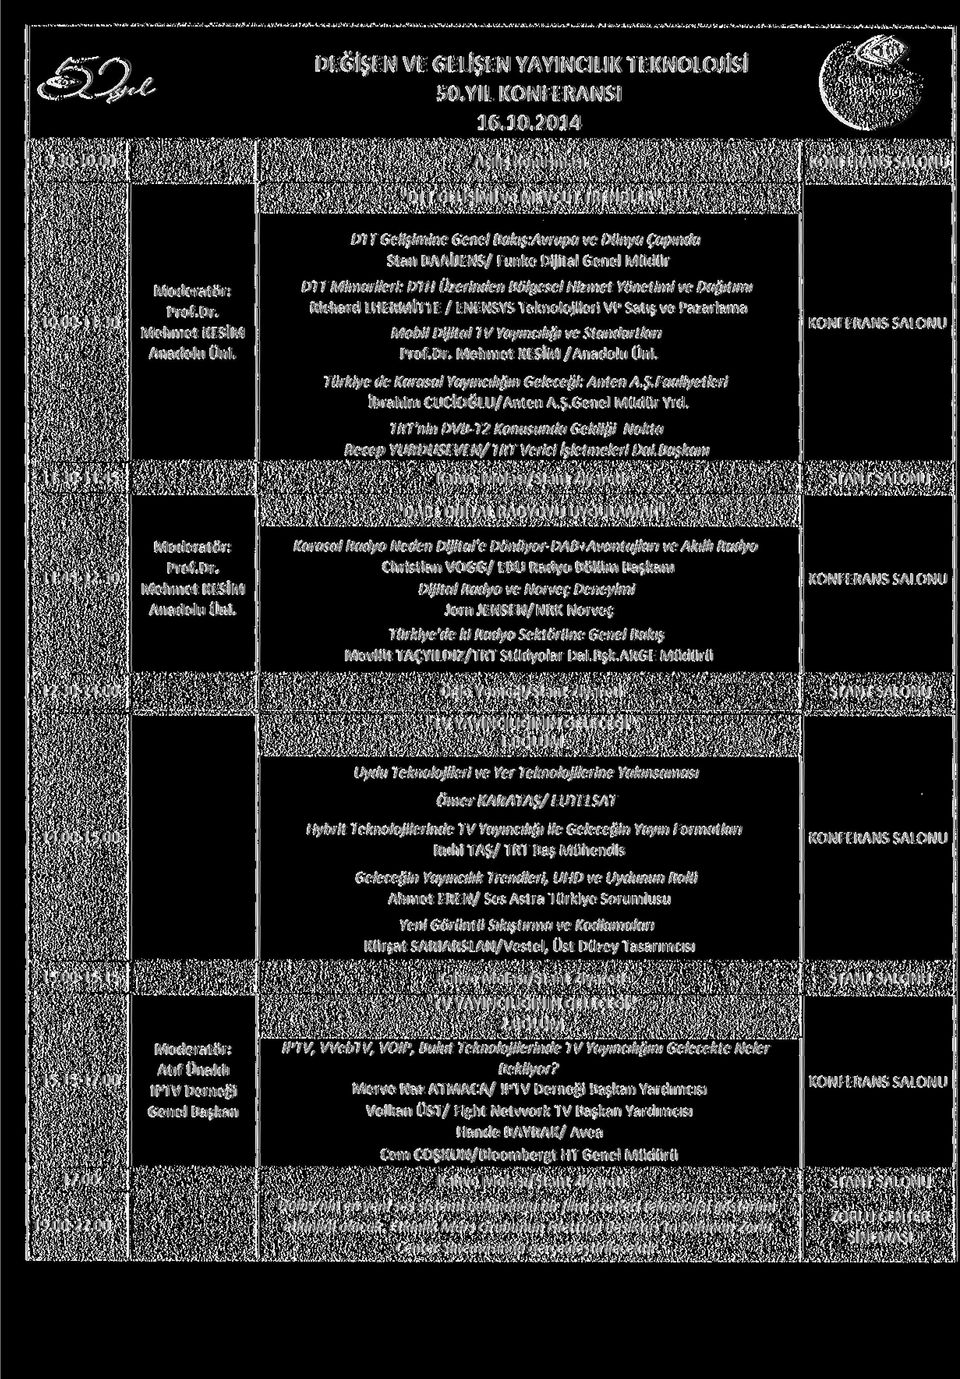 30 DTT Mimarileri: DTH Üzerinden Bölgesel Hizmet Yönetimi ve Dağıtımı Richard LHERMİTTE / ENENSYS Teknolojileri VP Satış ve Pazarlama Mobil Dijital TV Yayıncılığı ve Standartları / Türkiye de Karasal